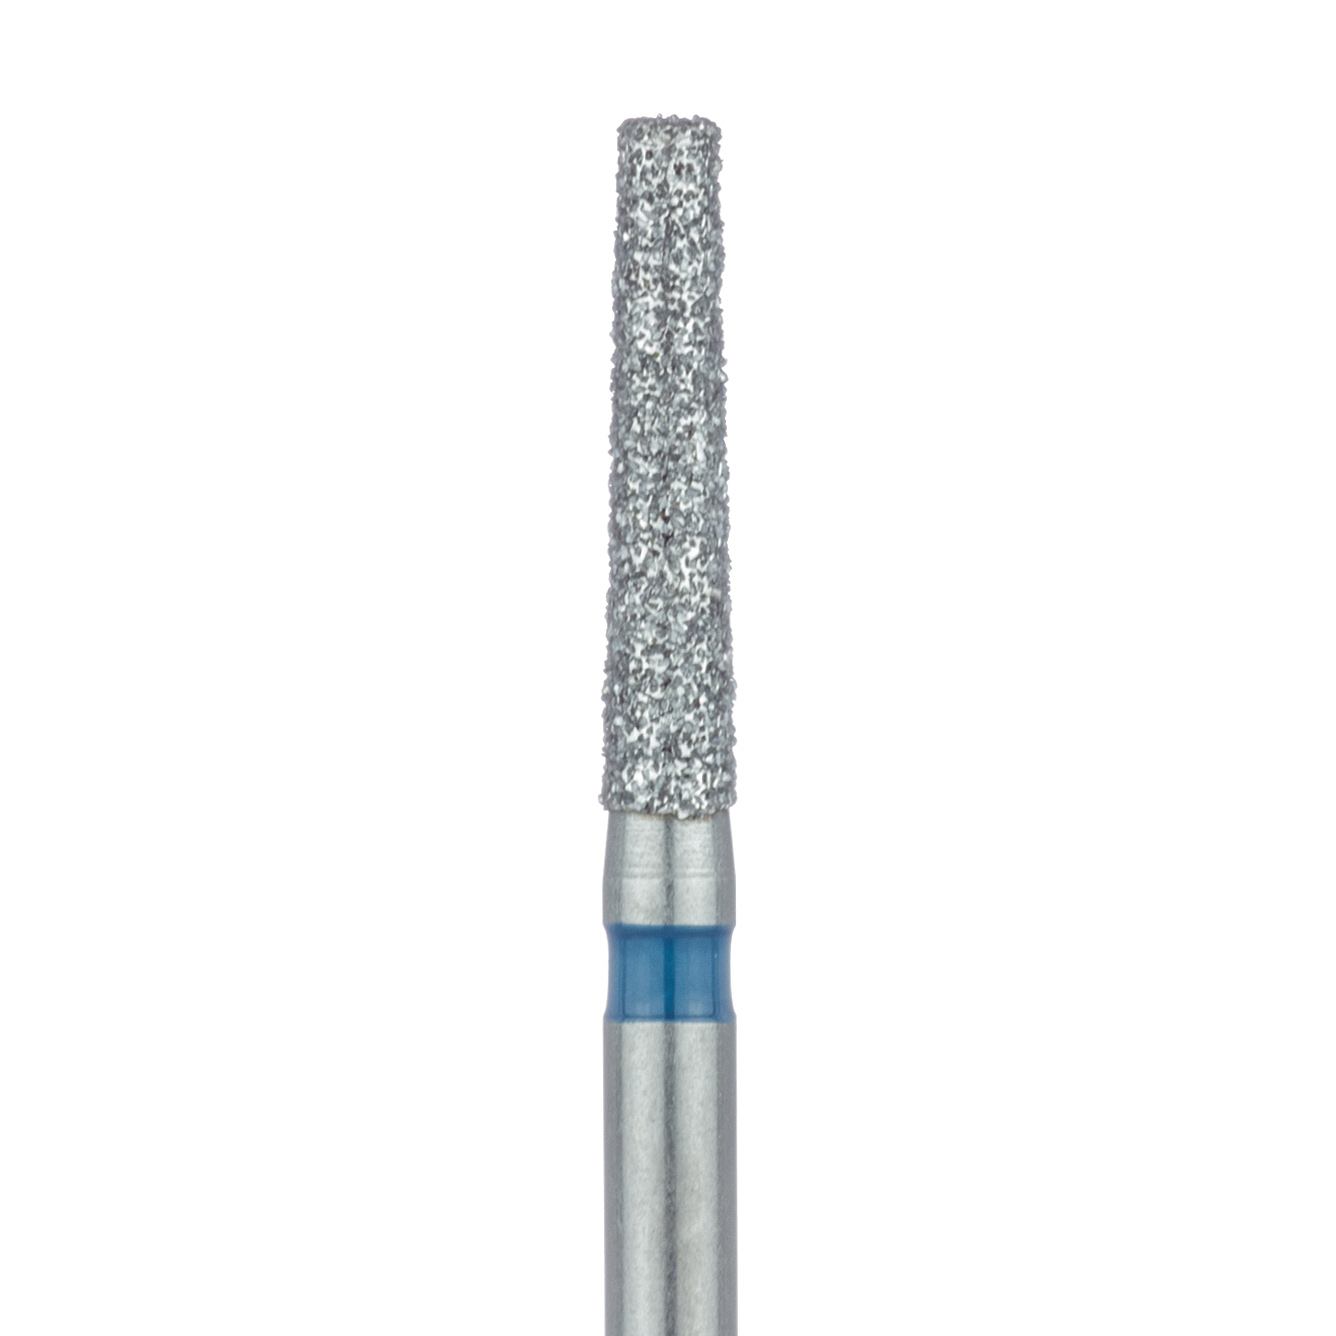 847-016-FG Long Tapered Flat End Diamond Bur, 1.6mm Ø, Medium, 0.9mm Tip Ø, FG